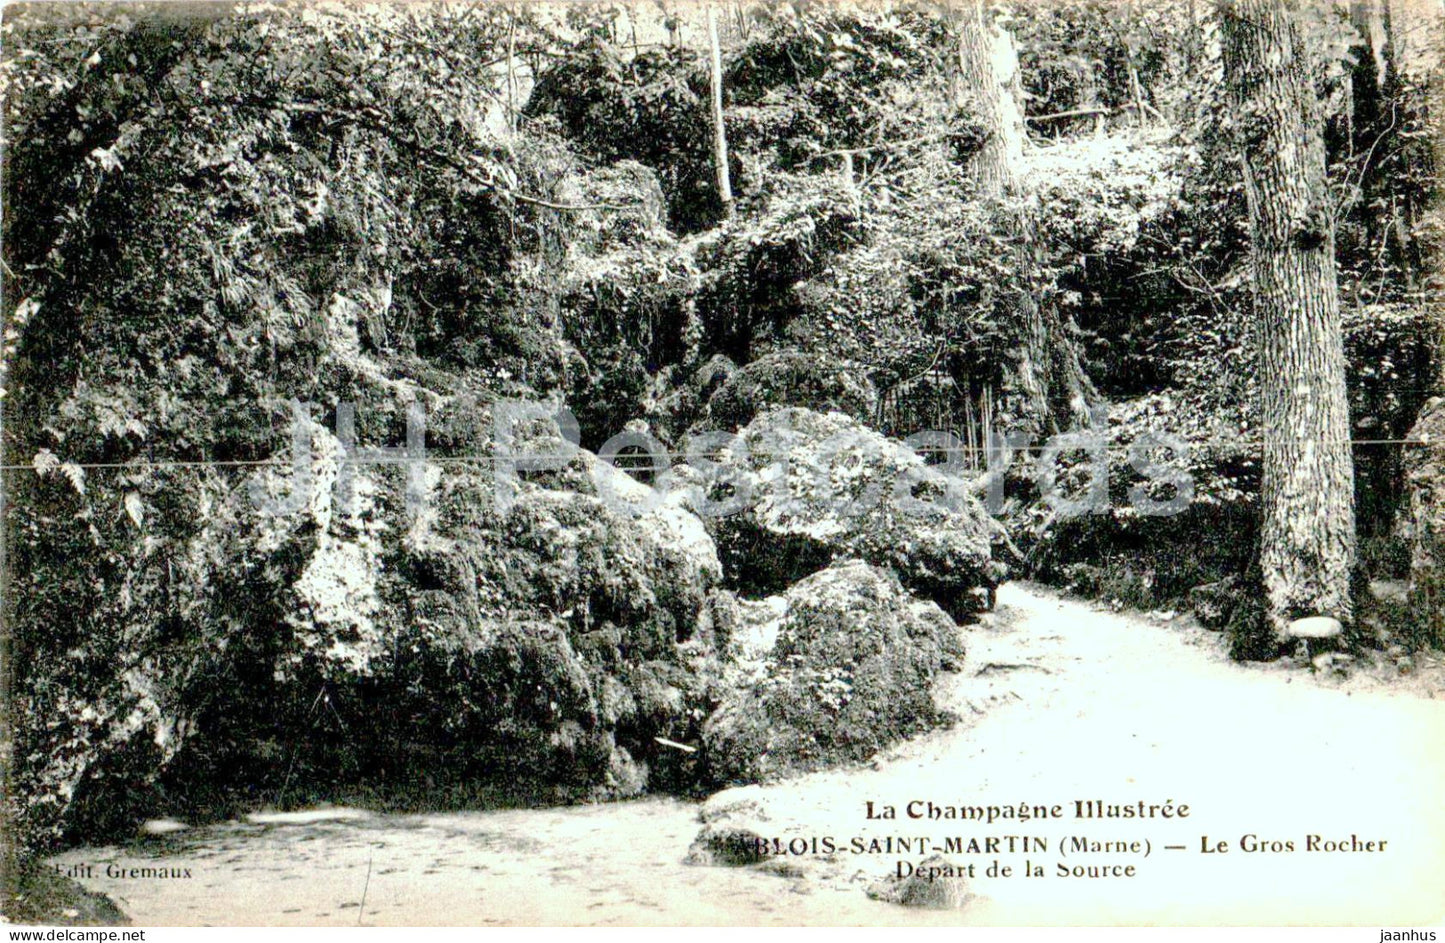 Ablois Saint Martin - Le Gros Rocher - Depart de la Source - old postcard - 1915 - France - used - JH Postcards